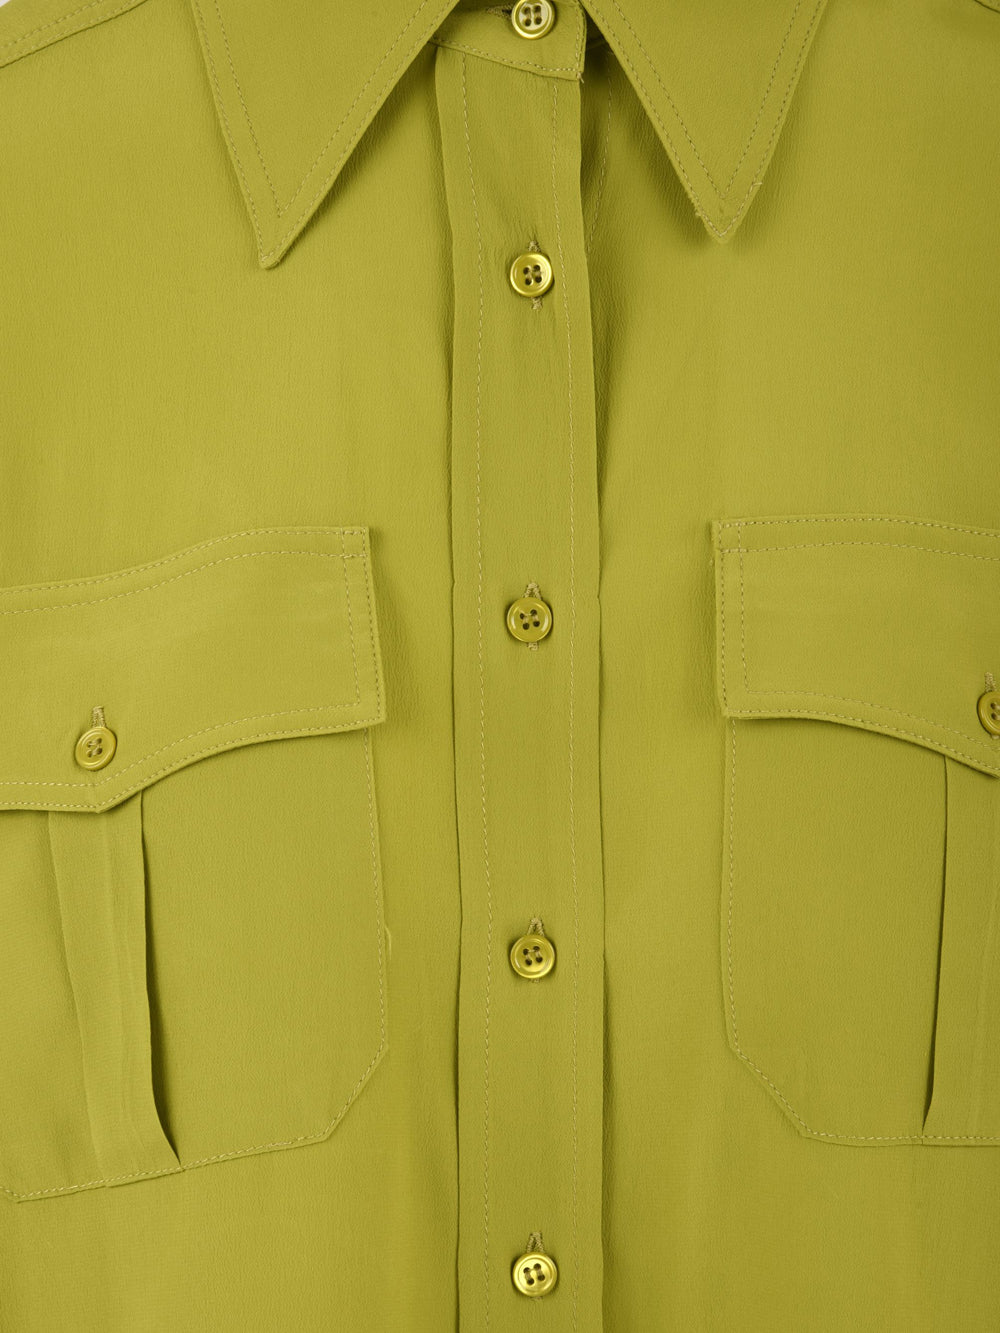 Dettaglio della camicia da donna Solotre colore cedro, con taschine frontali e chiusura con bottoni